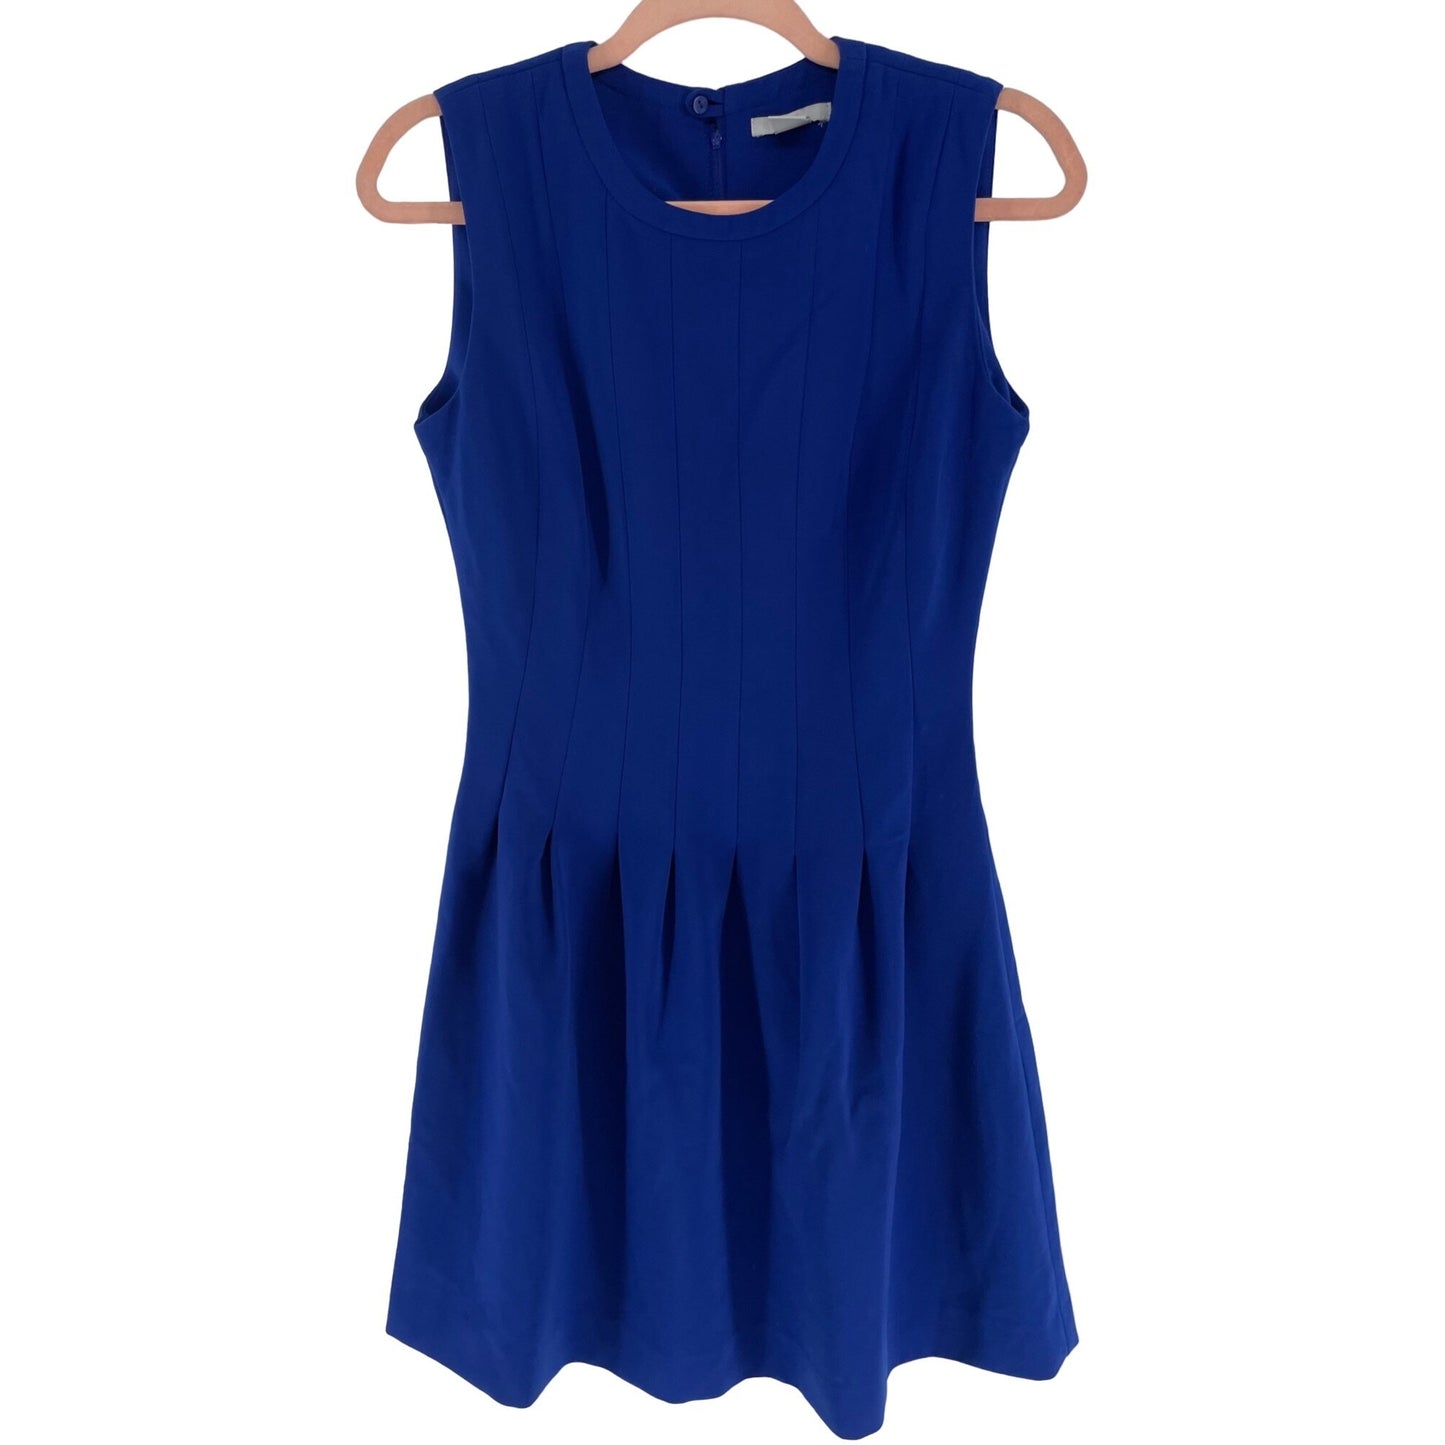 H&M Women's Size 6 Cobalt Blue Pleated Sleeveless A-Line Shift Dress